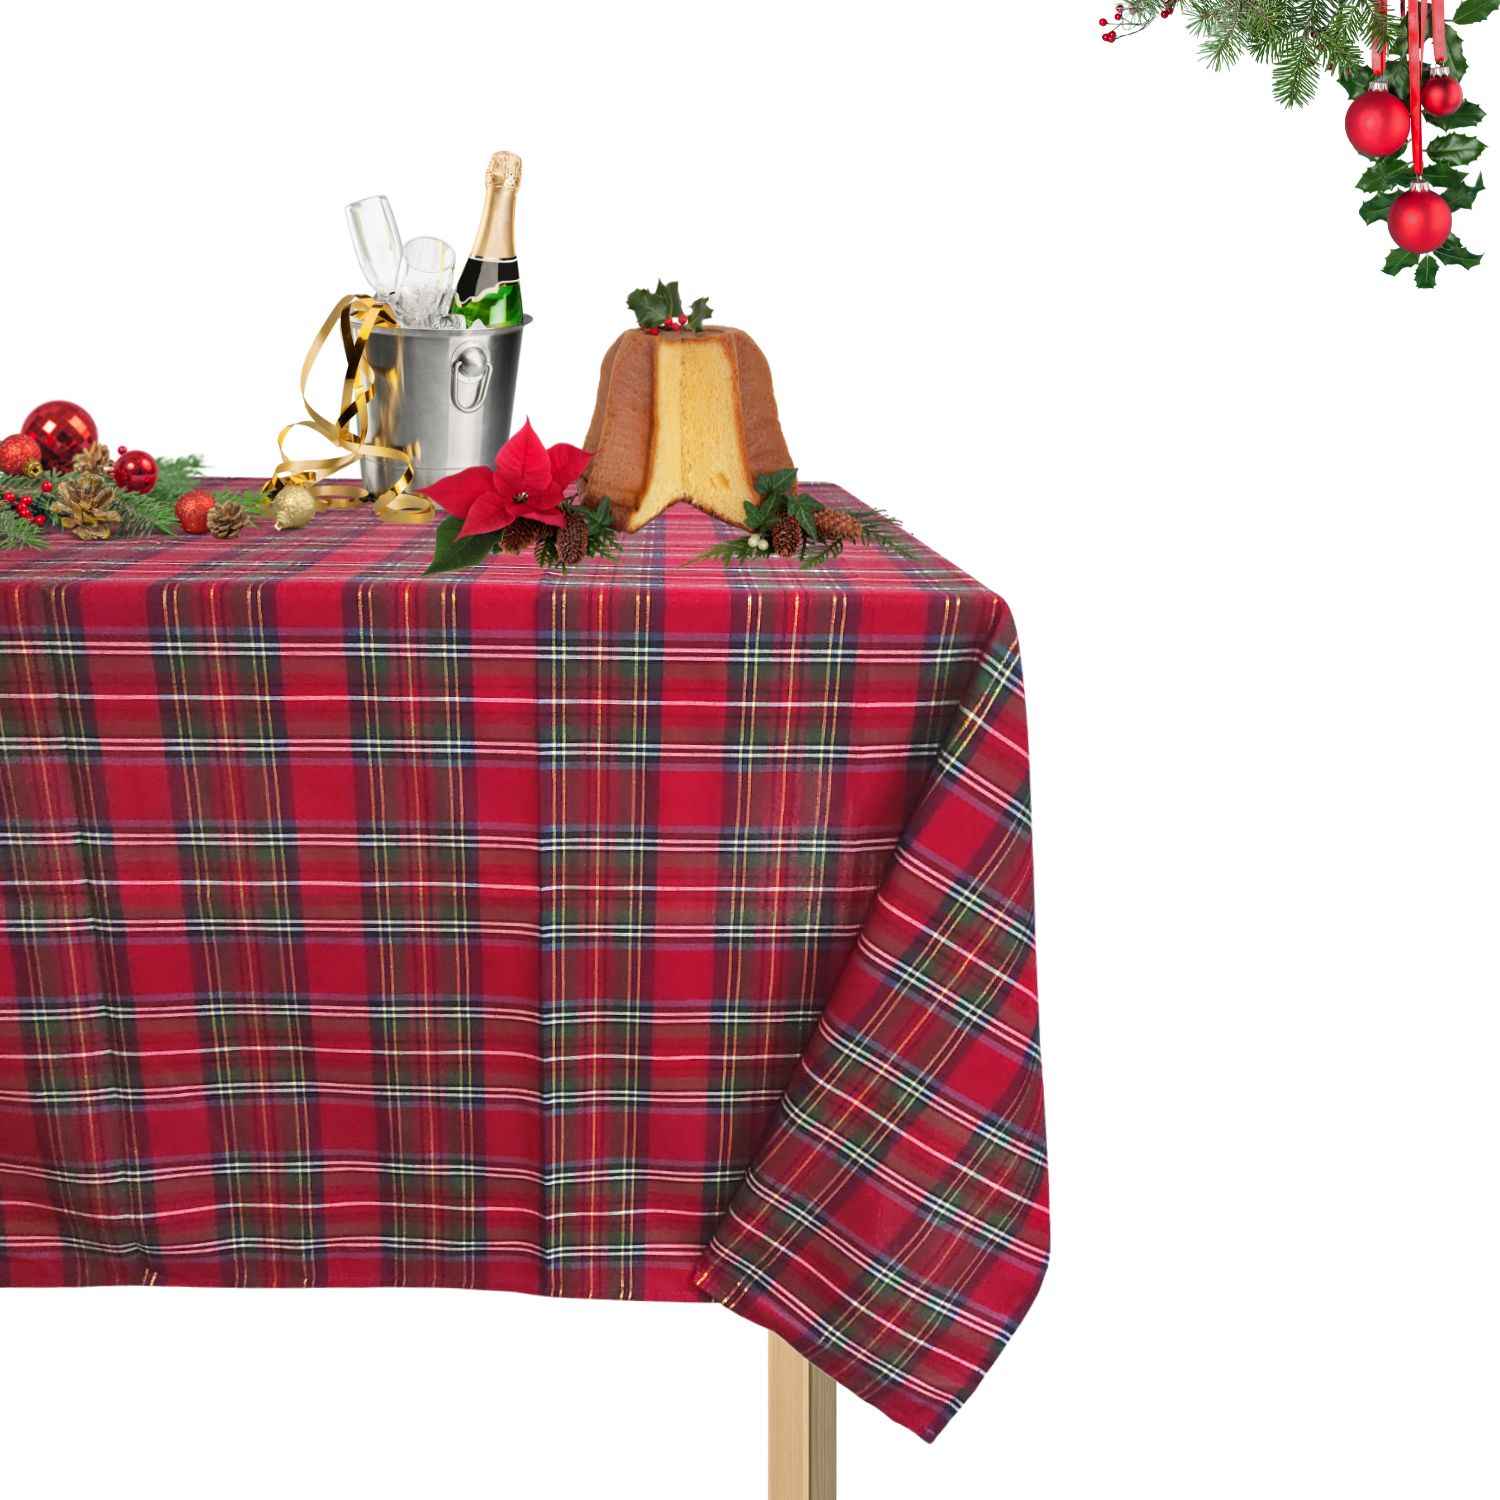 tartan-filo-lurex-oro-tovaglia-puro-cotone-made-in-italy-scozzese-natalizia-rossa